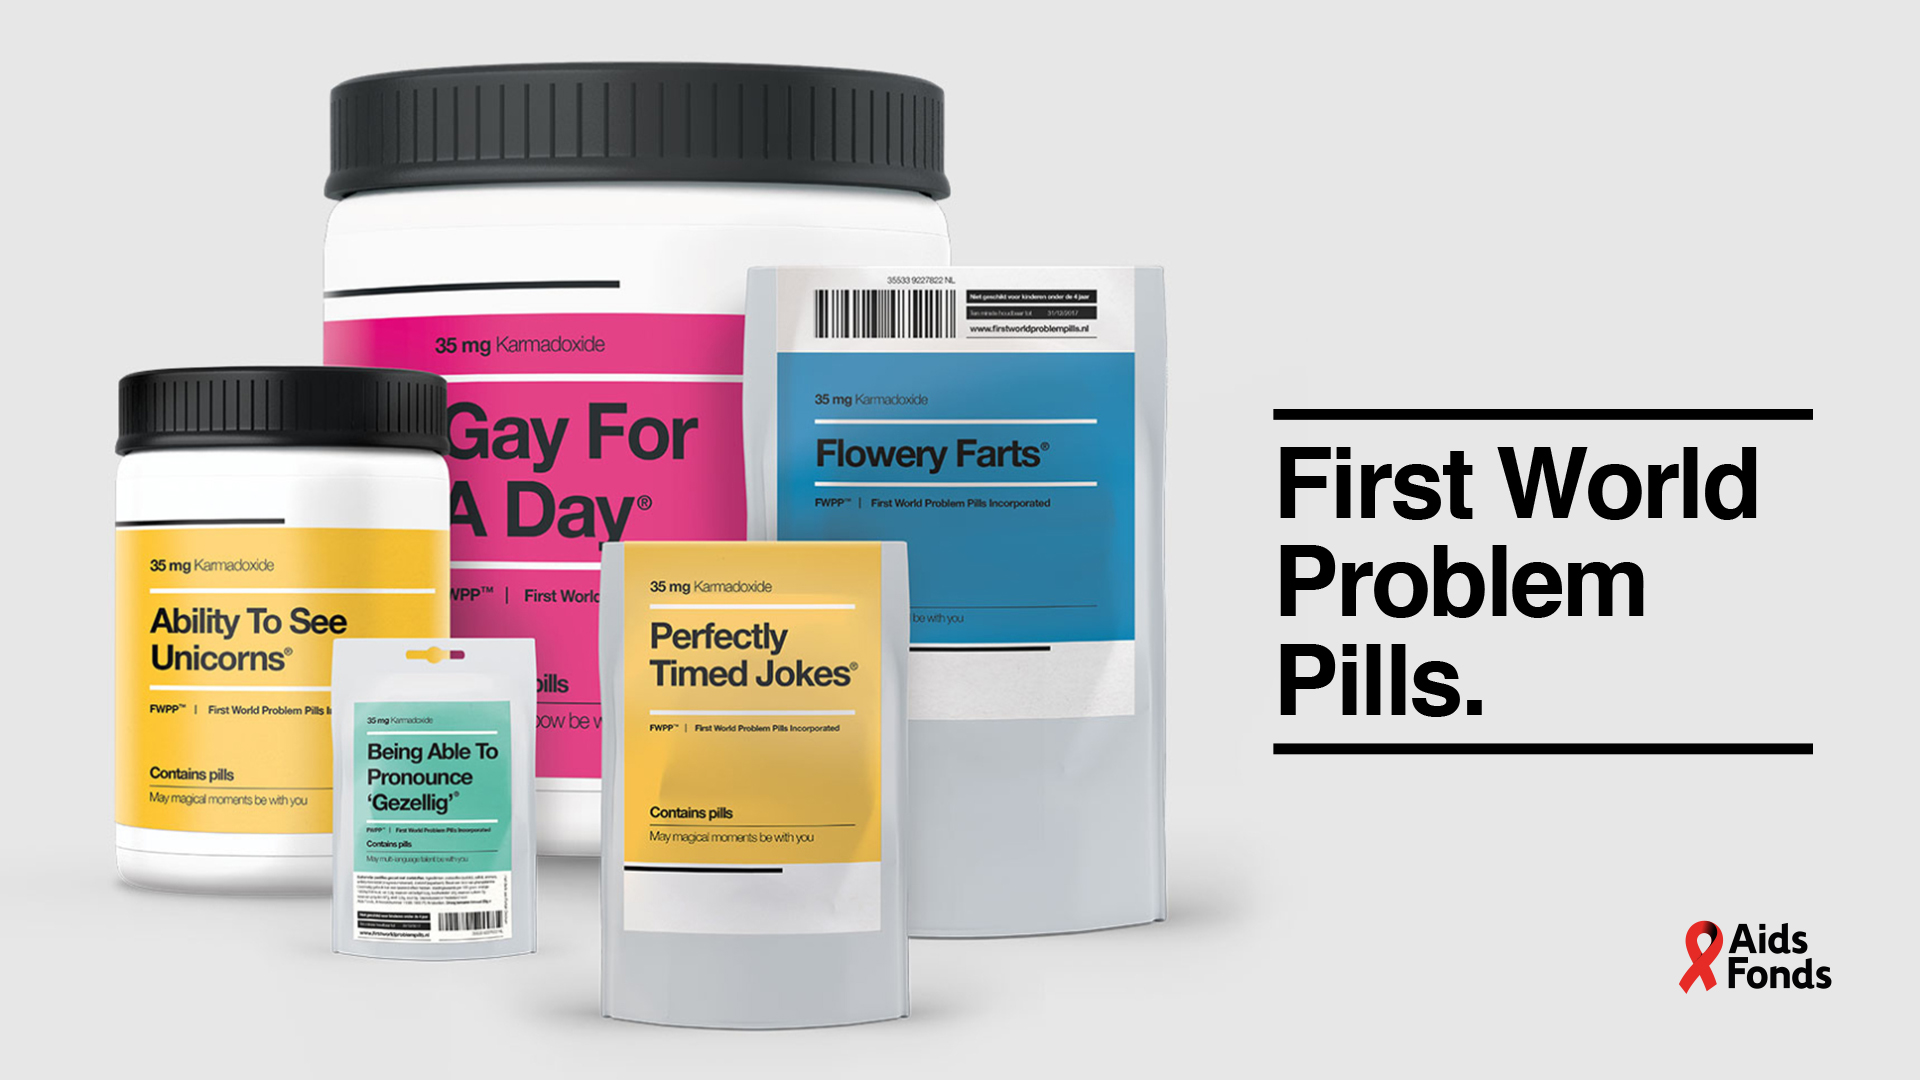 First World Problem Pills